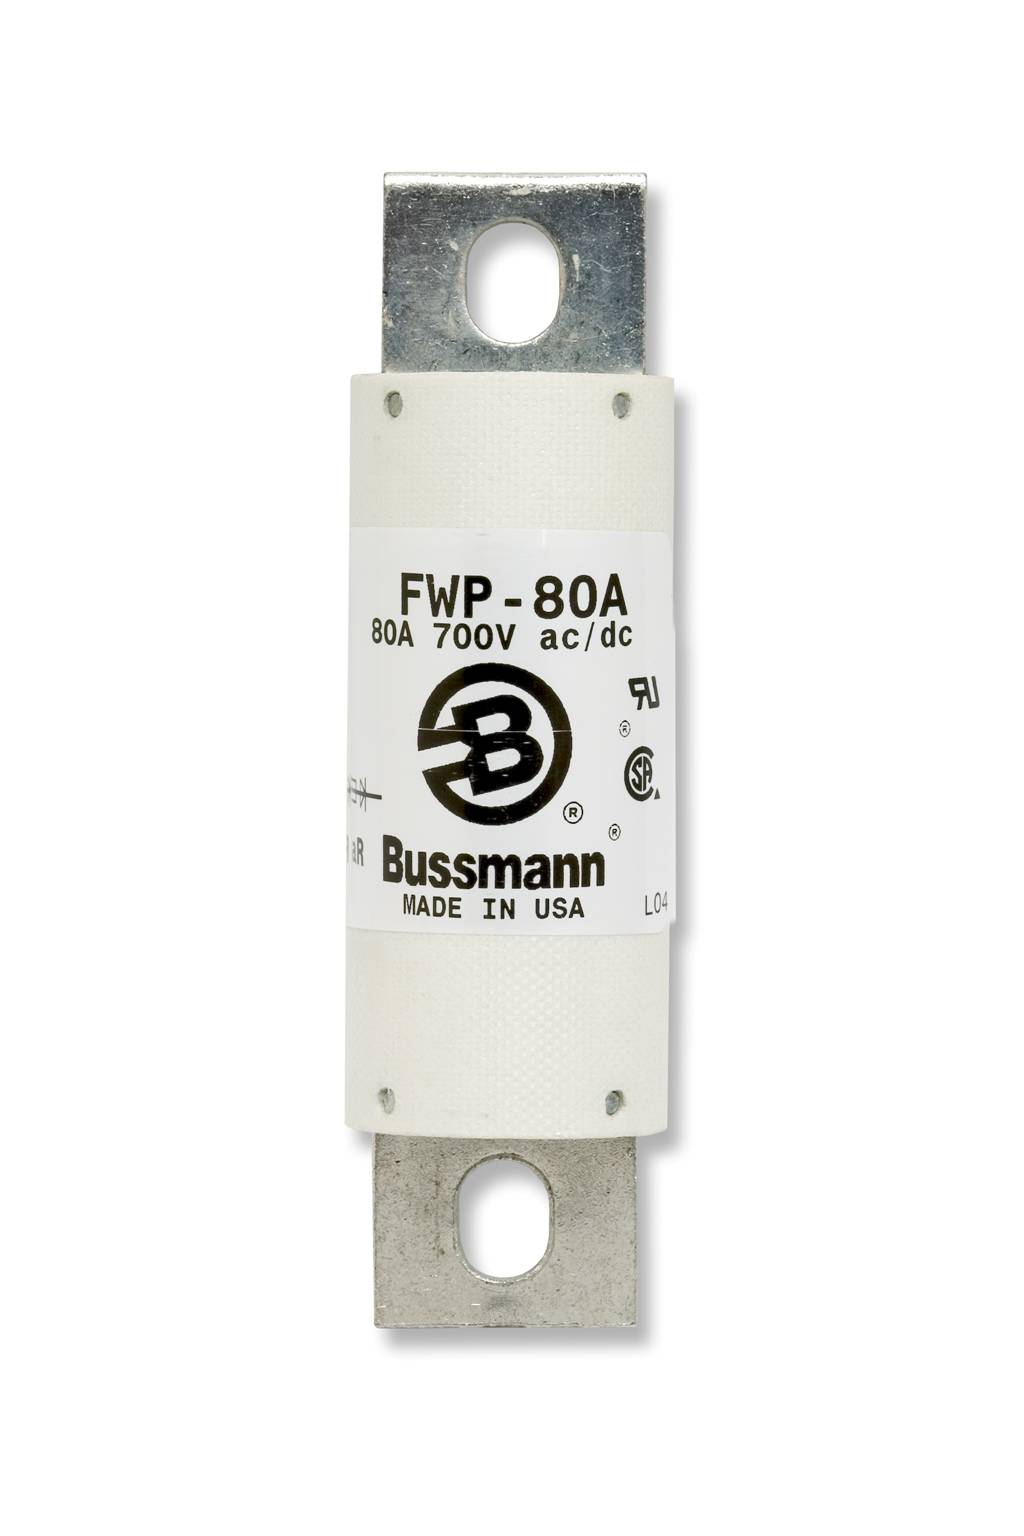 Part# FWP-250A  Manufacturer BUSSMANN  Part Type 700 Volt Fuse